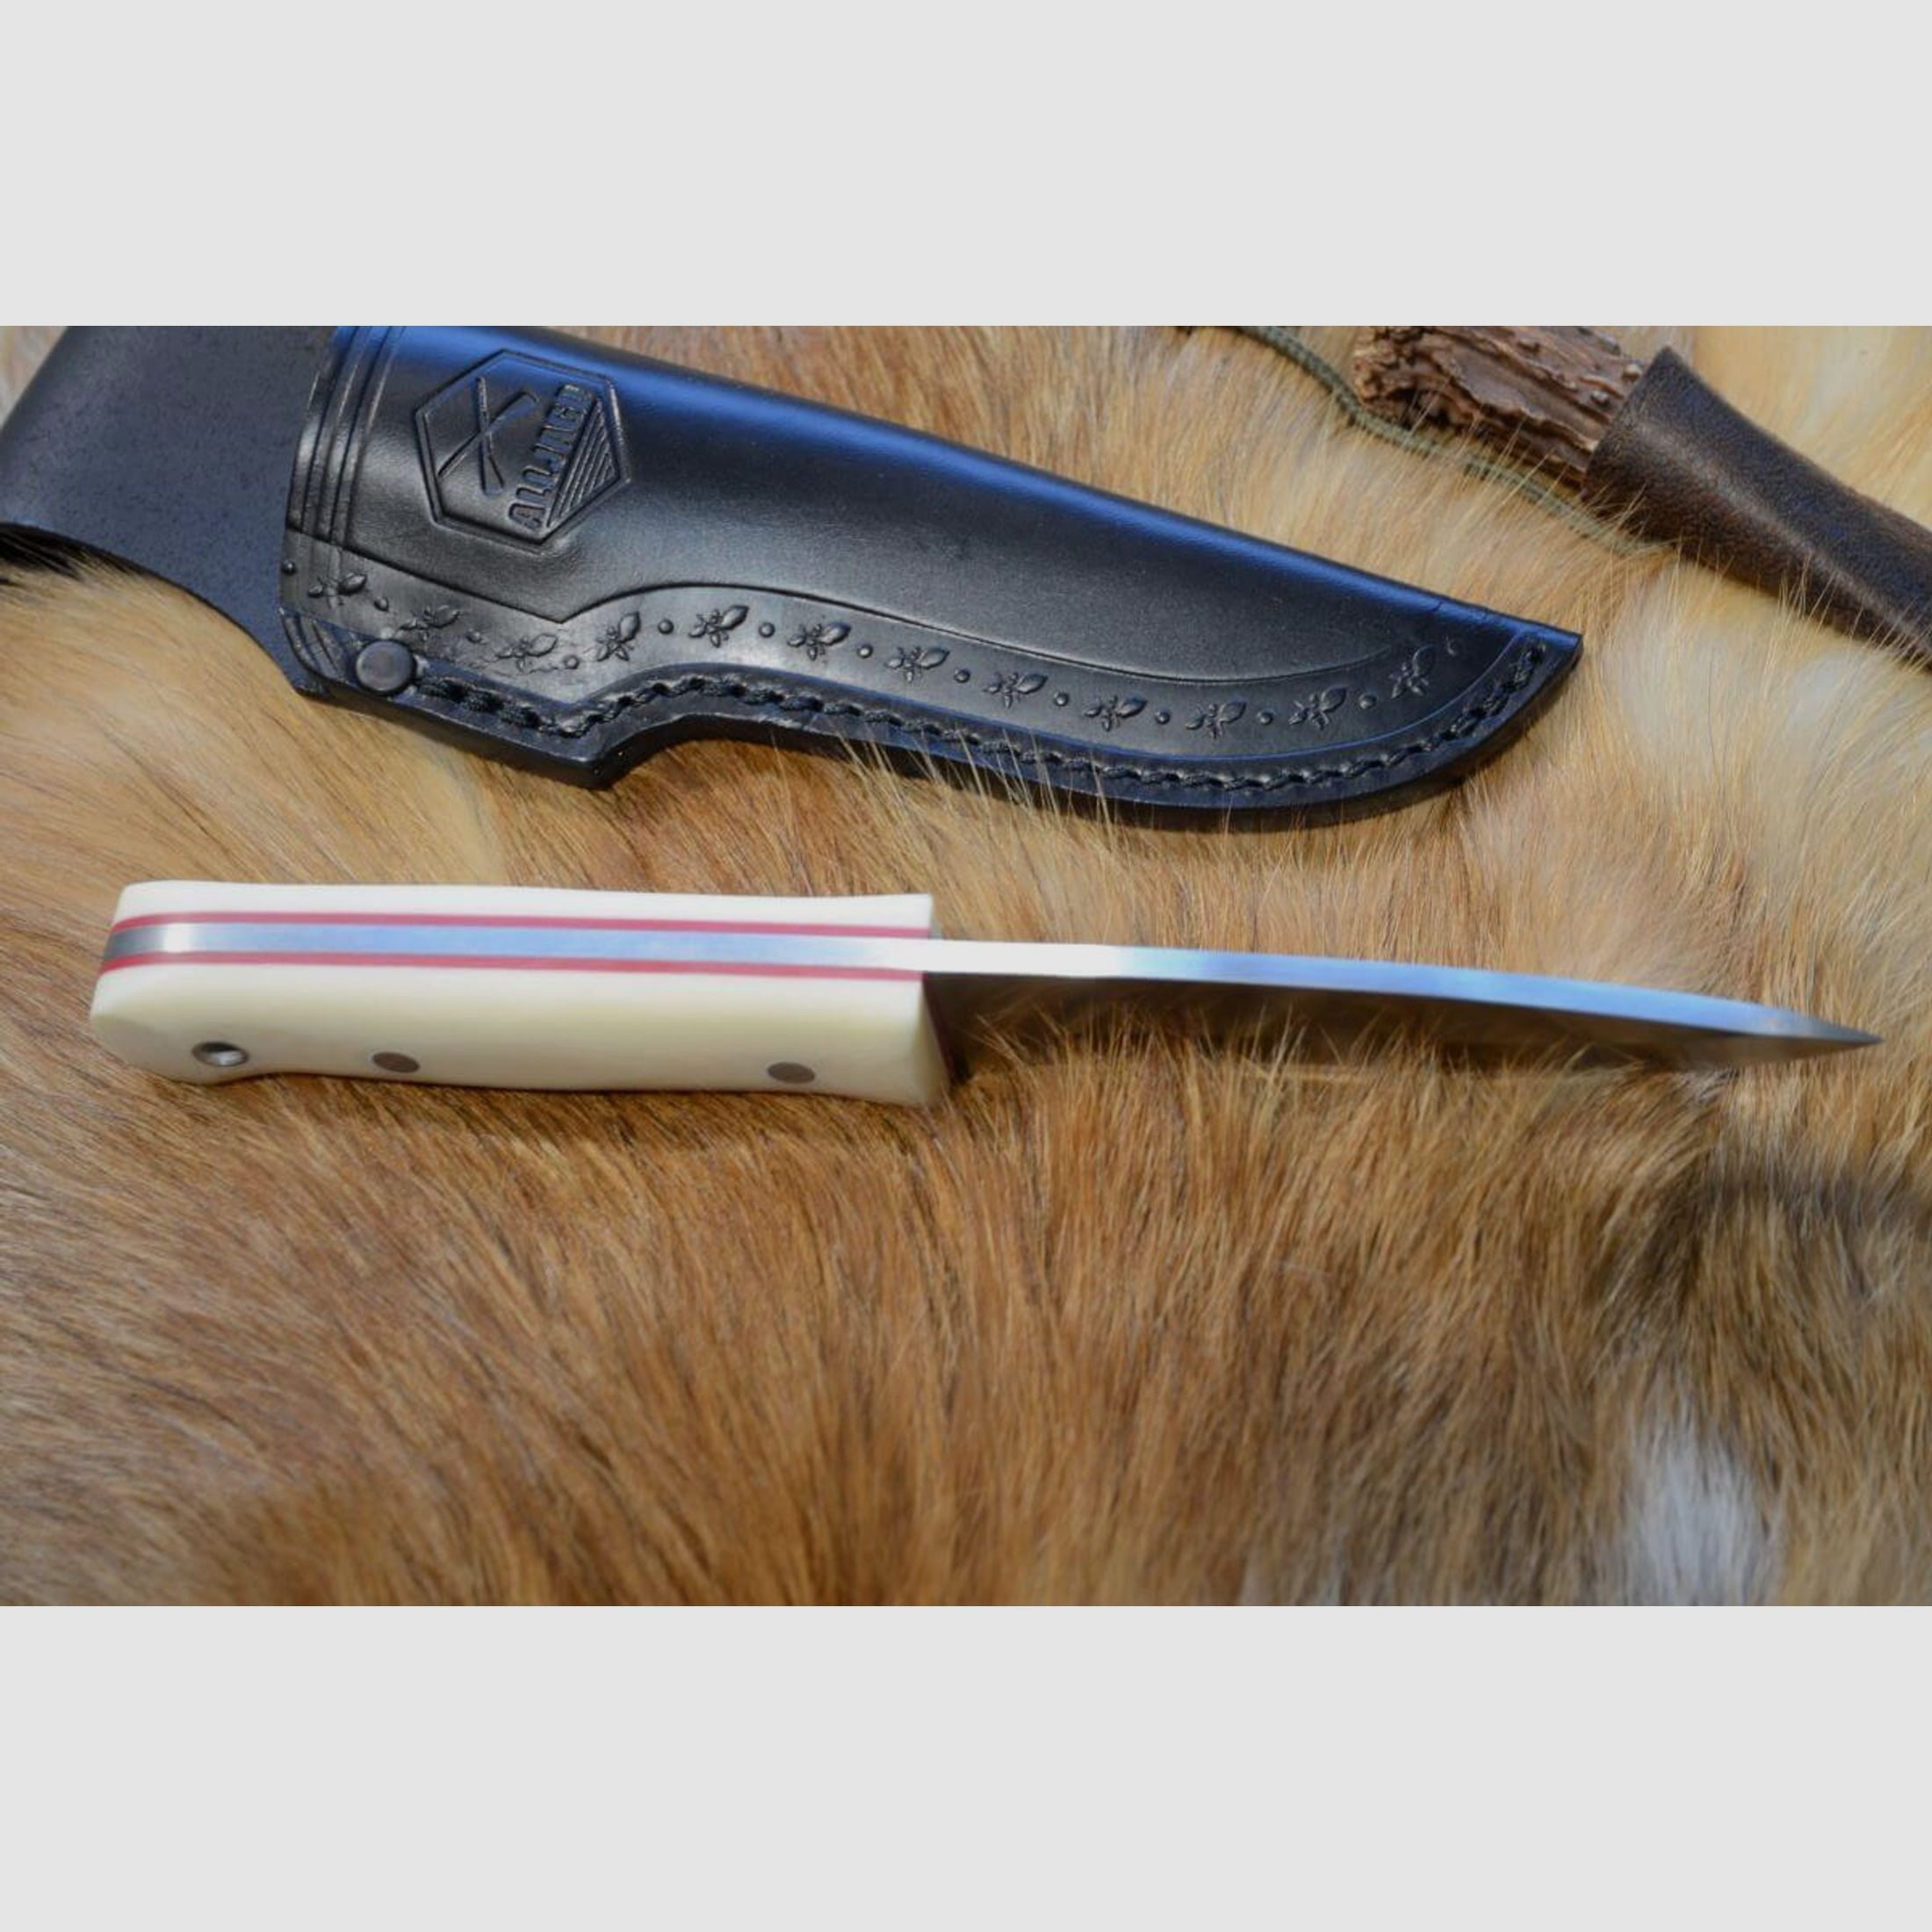 Jagdmesser mit Elfenbein-Micartagriff­schalen & Linern